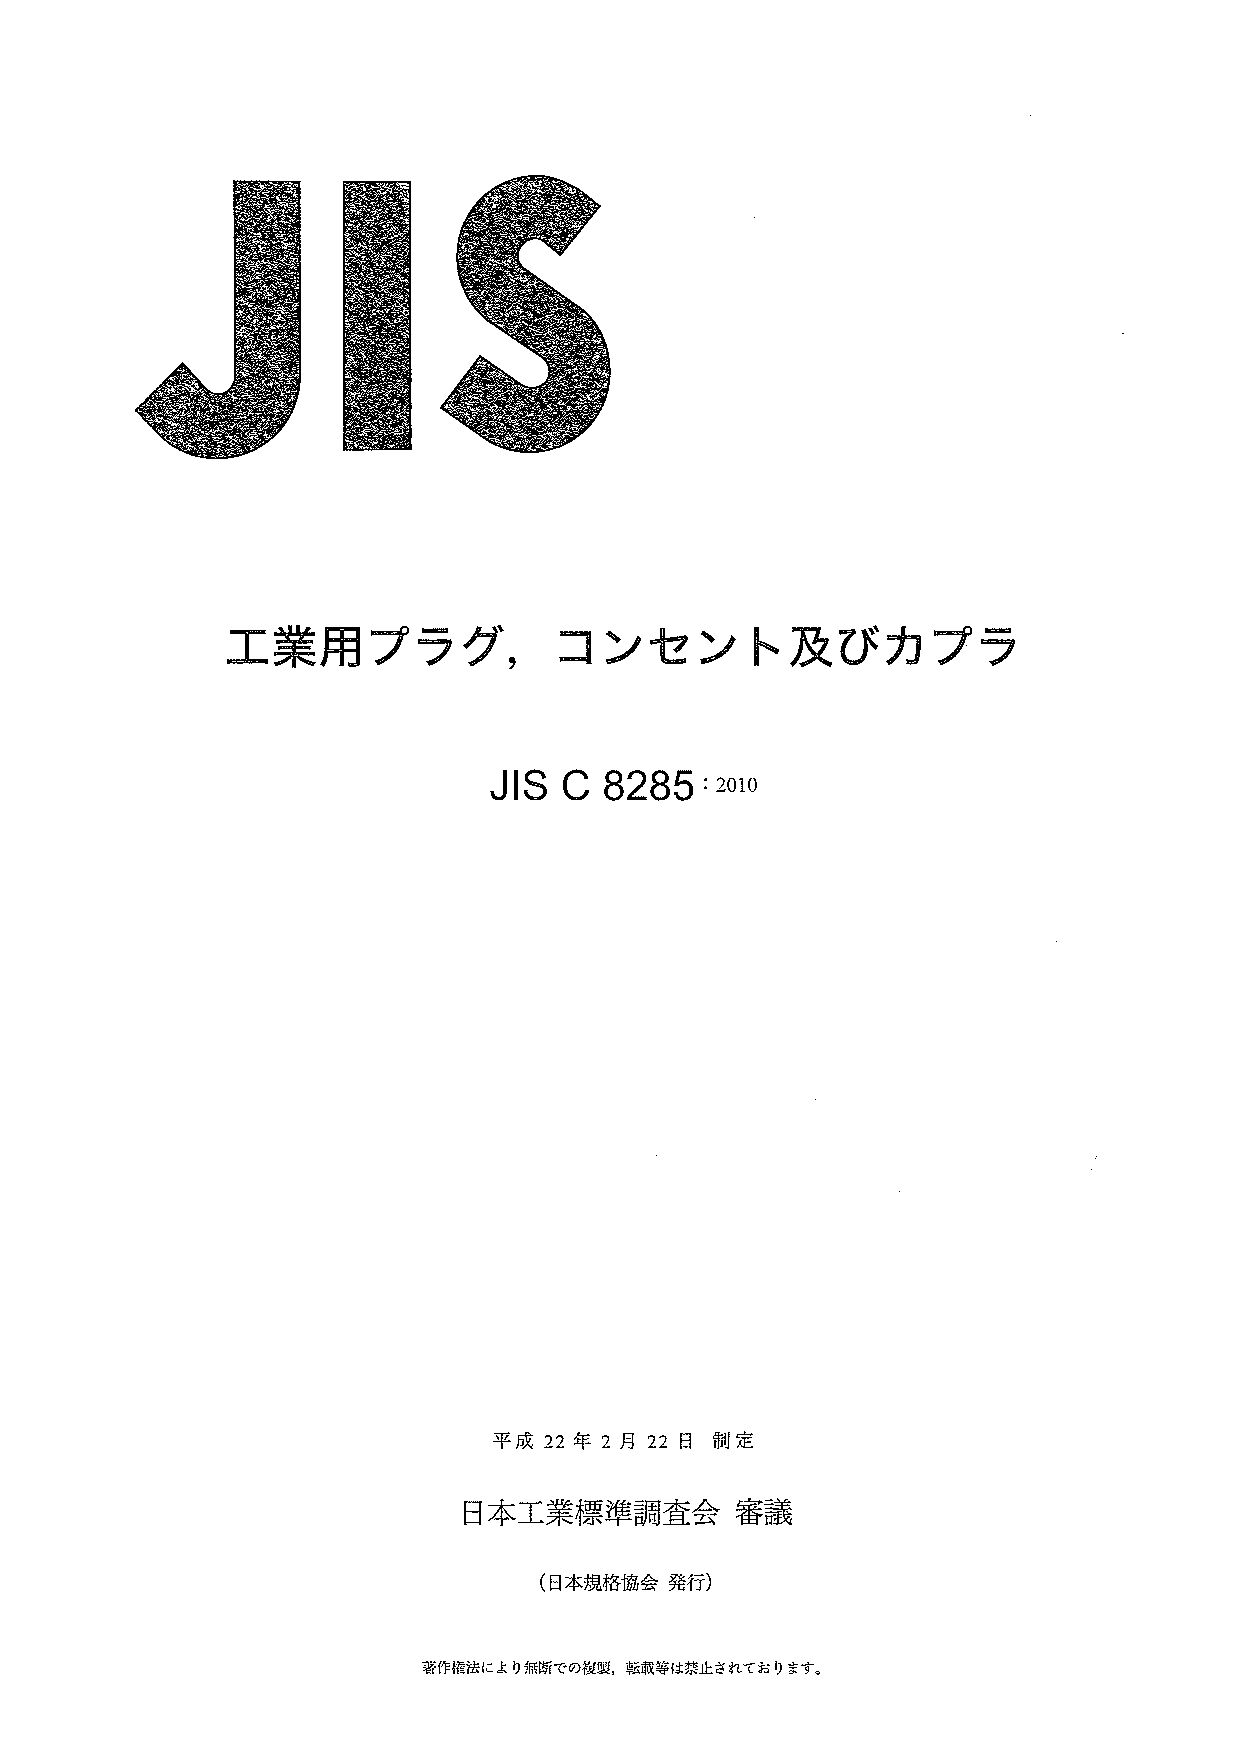 JIS C8285-2010